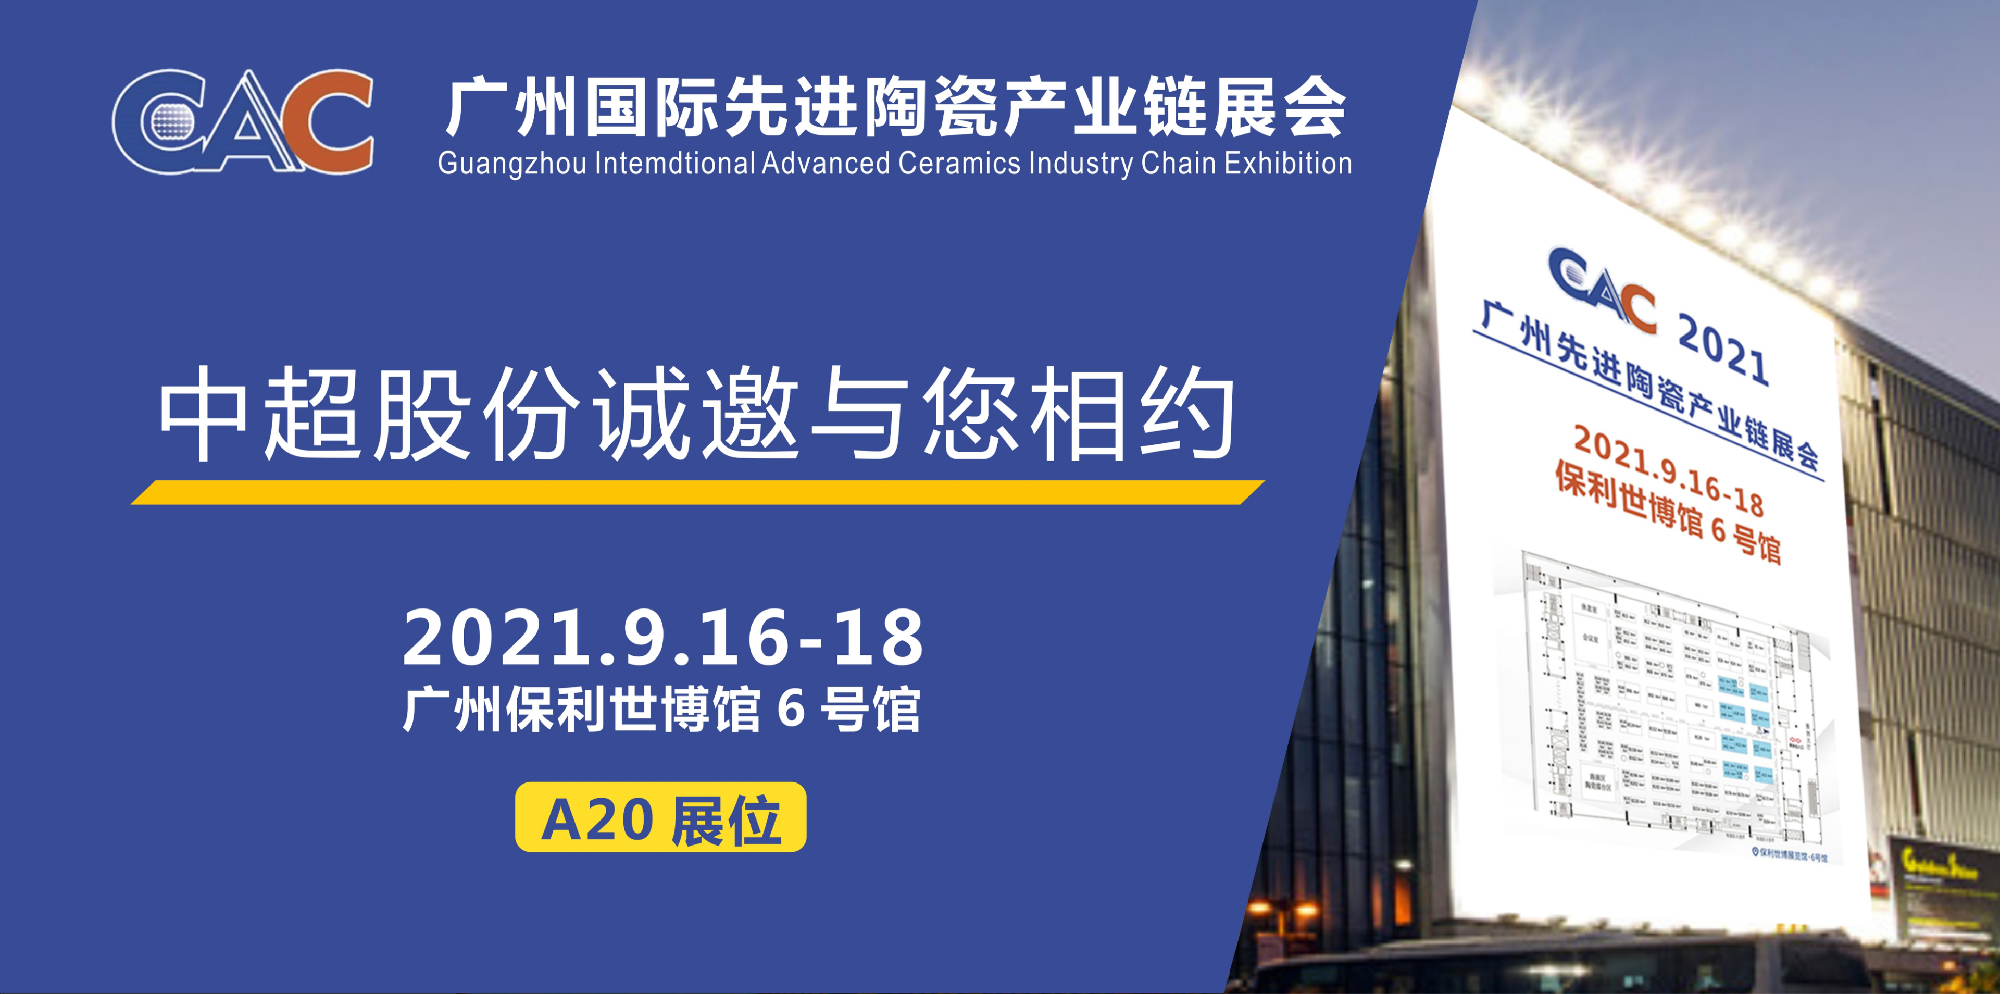 邀請函 I 中超股份與您相約CAC 2021廣州國際先進陶瓷產業鏈展會（9月16-18日）